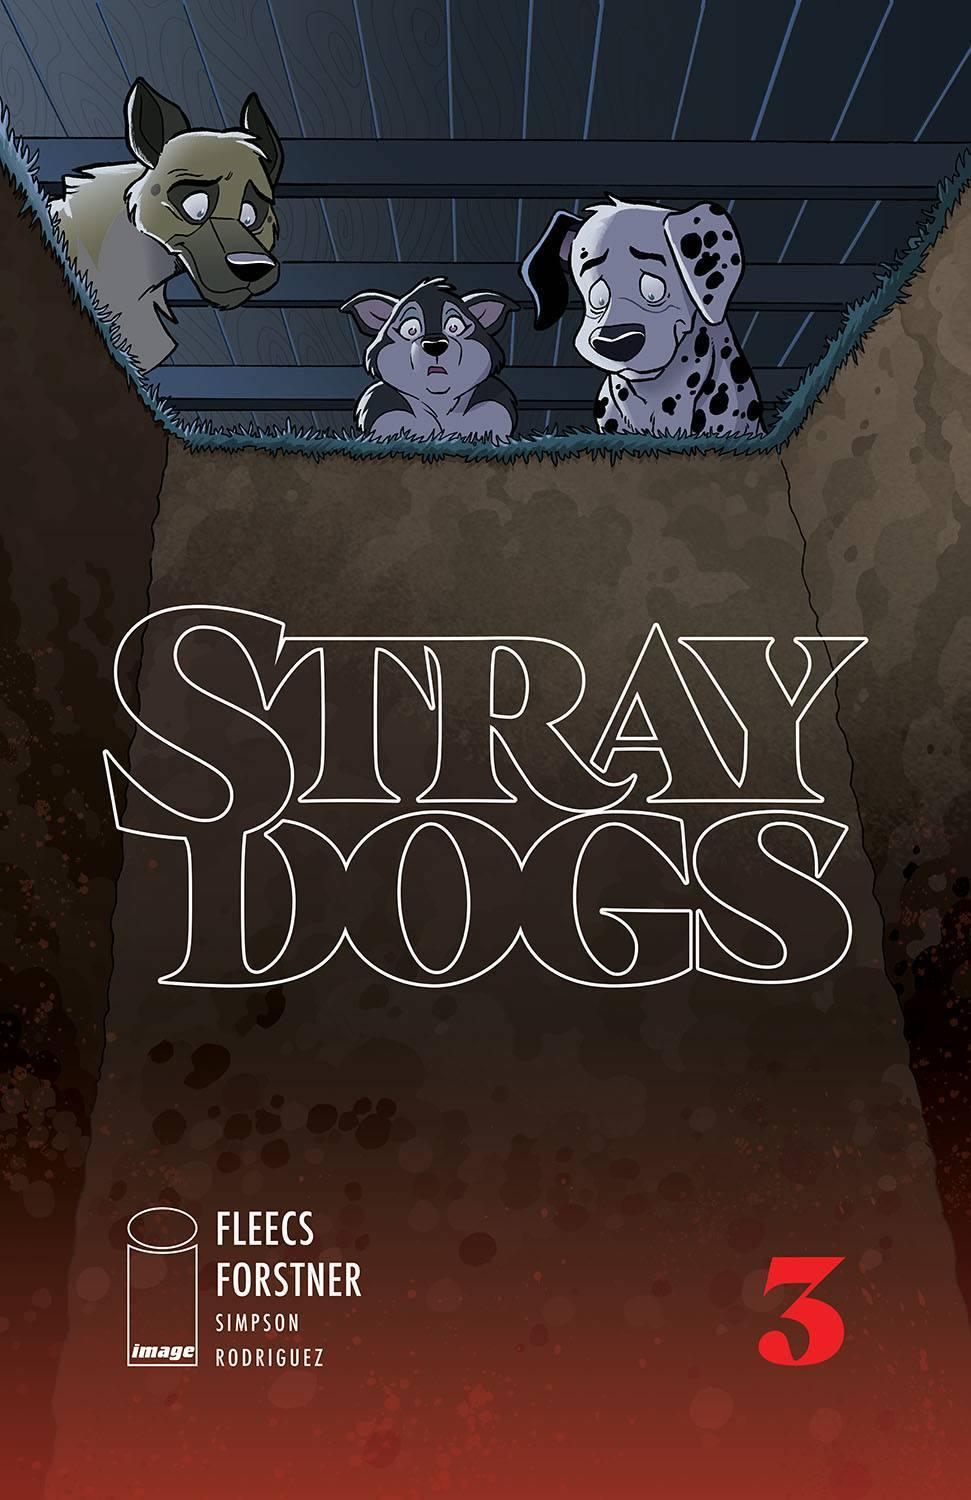 STRAY DOGS #3 CVR A FORSTNER & FLEECS (SHIPS 04-21-21) - PCKComics.com